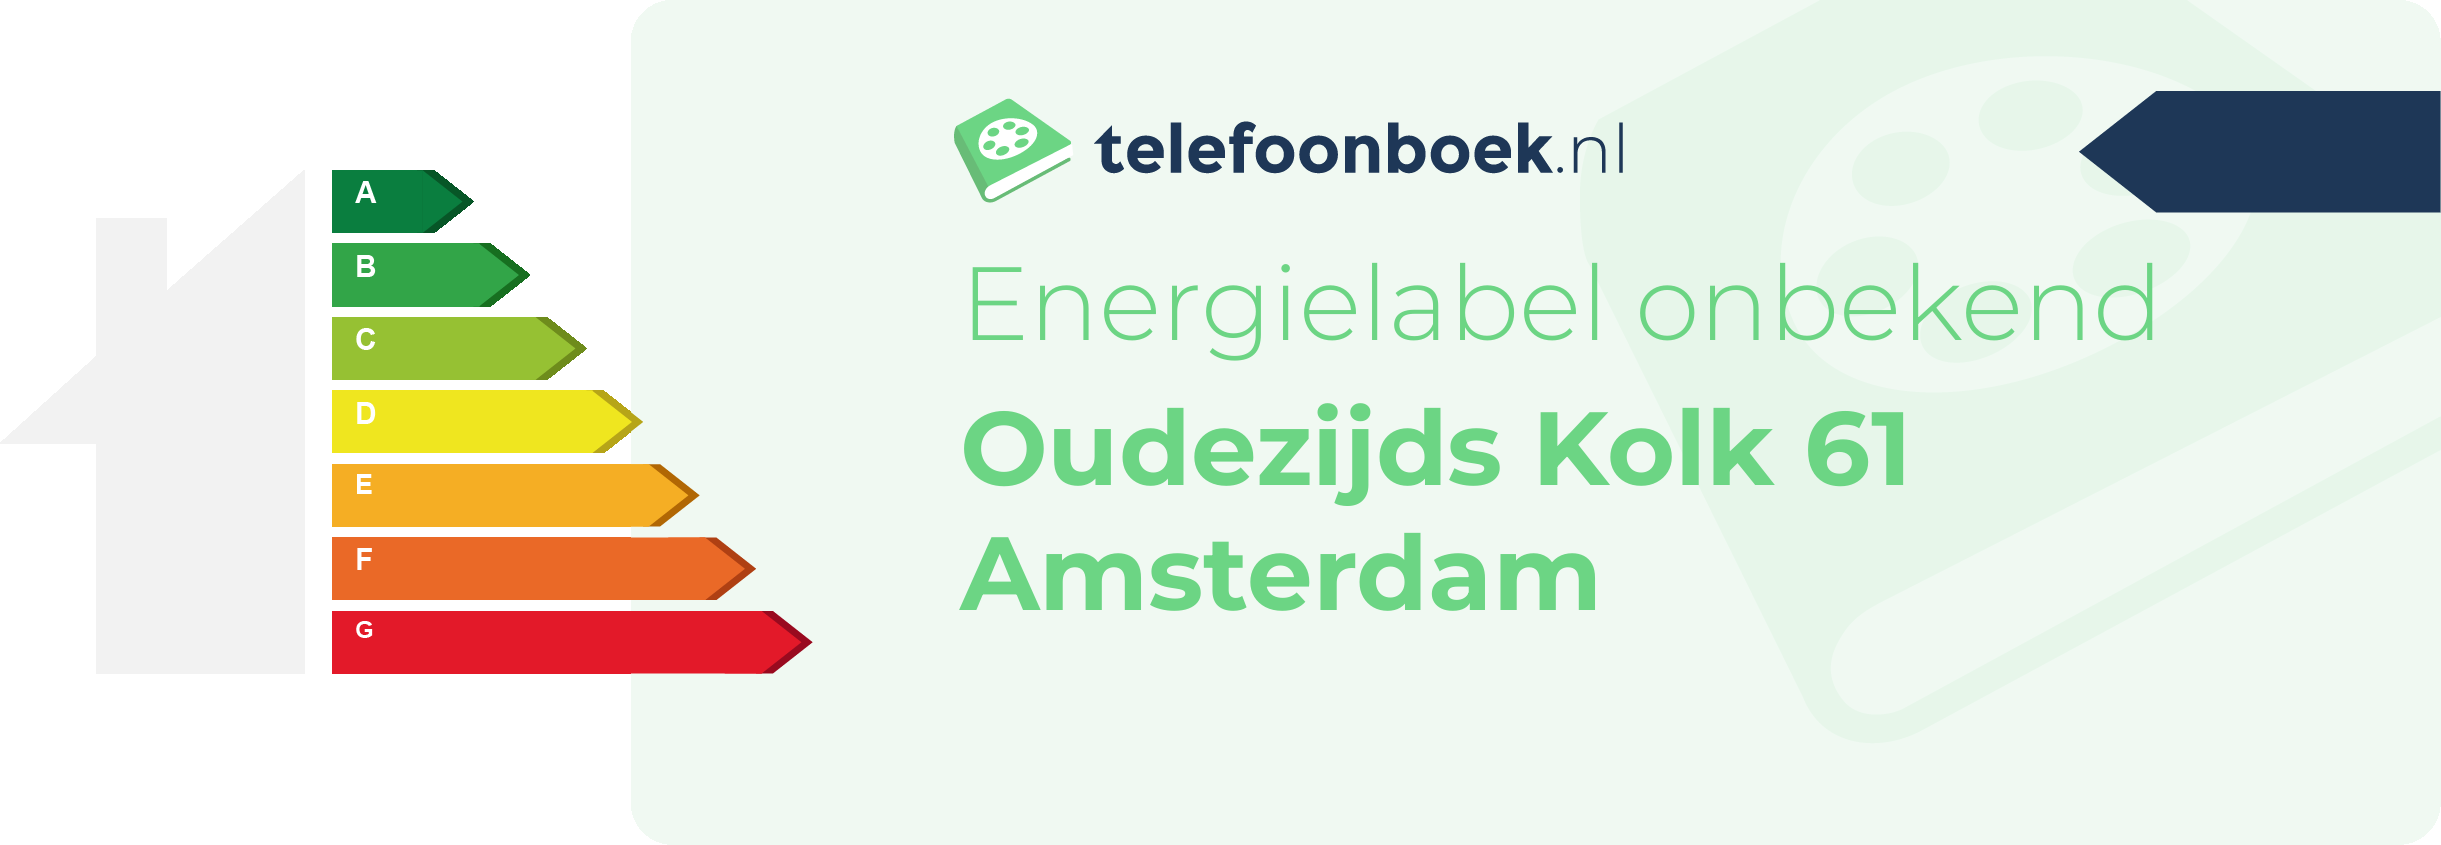 Energielabel Oudezijds Kolk 61 Amsterdam